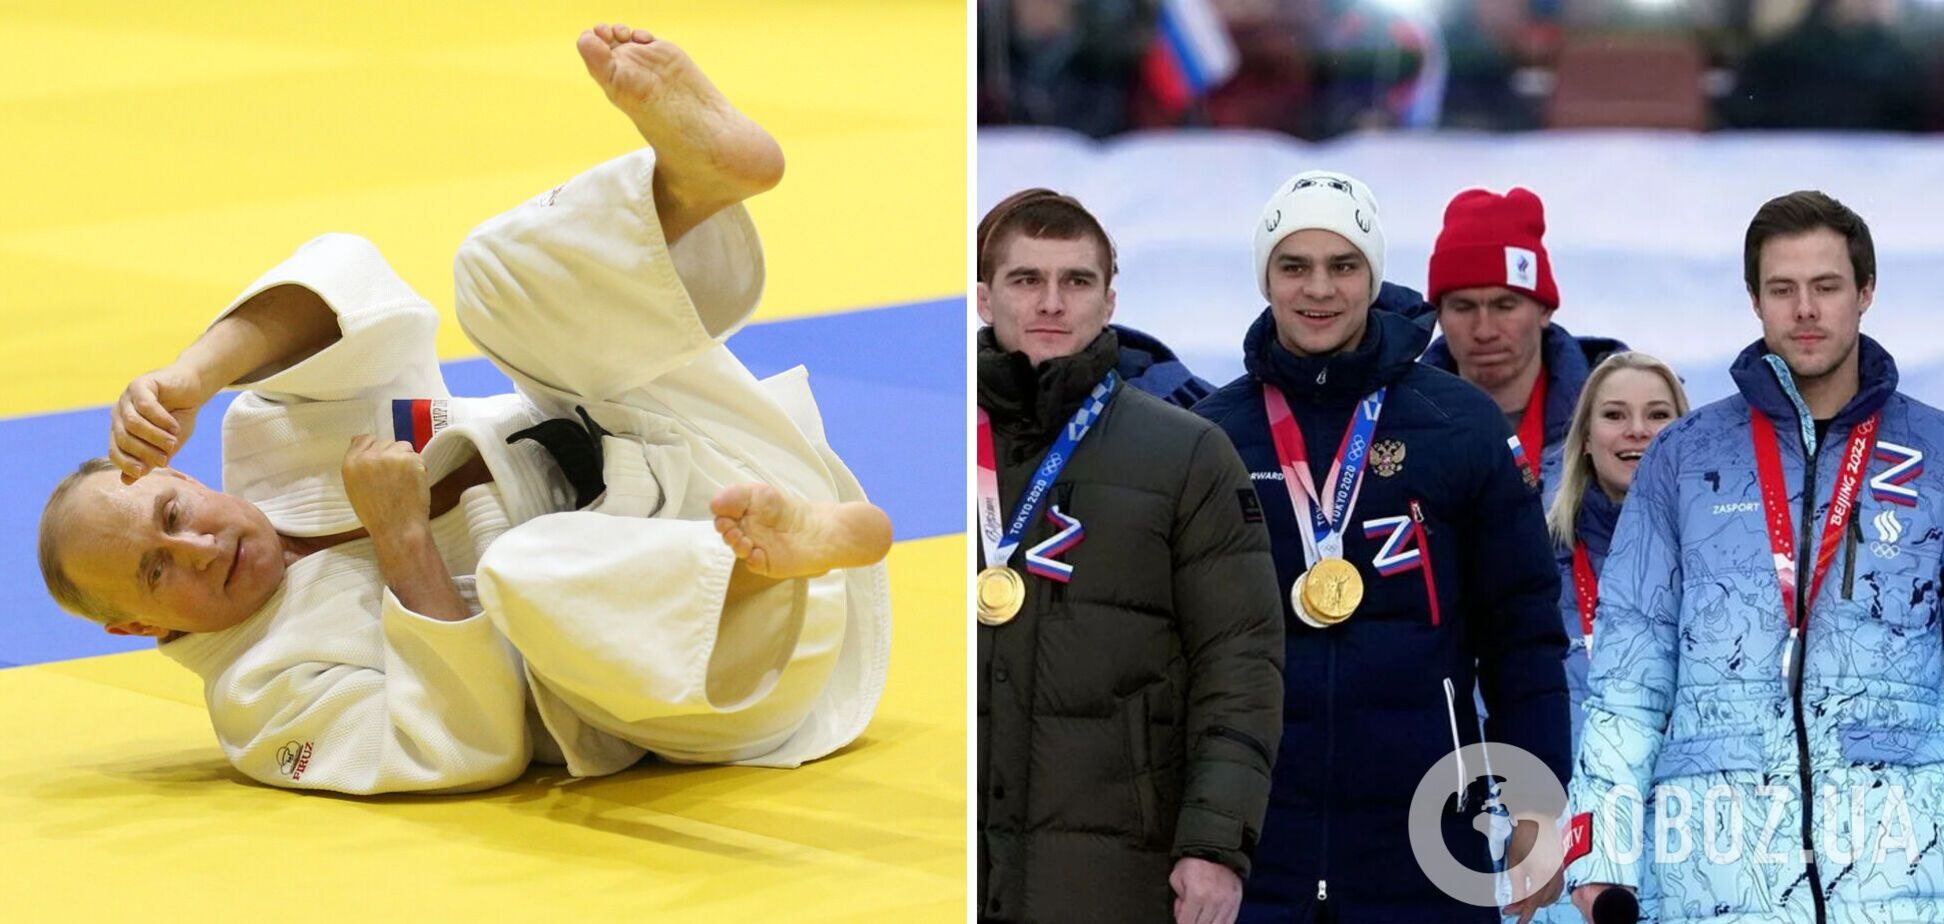 Путин вспомнил о 'победных традициях' в виде спорта, откуда его выгнали, приписав России достижения СССР